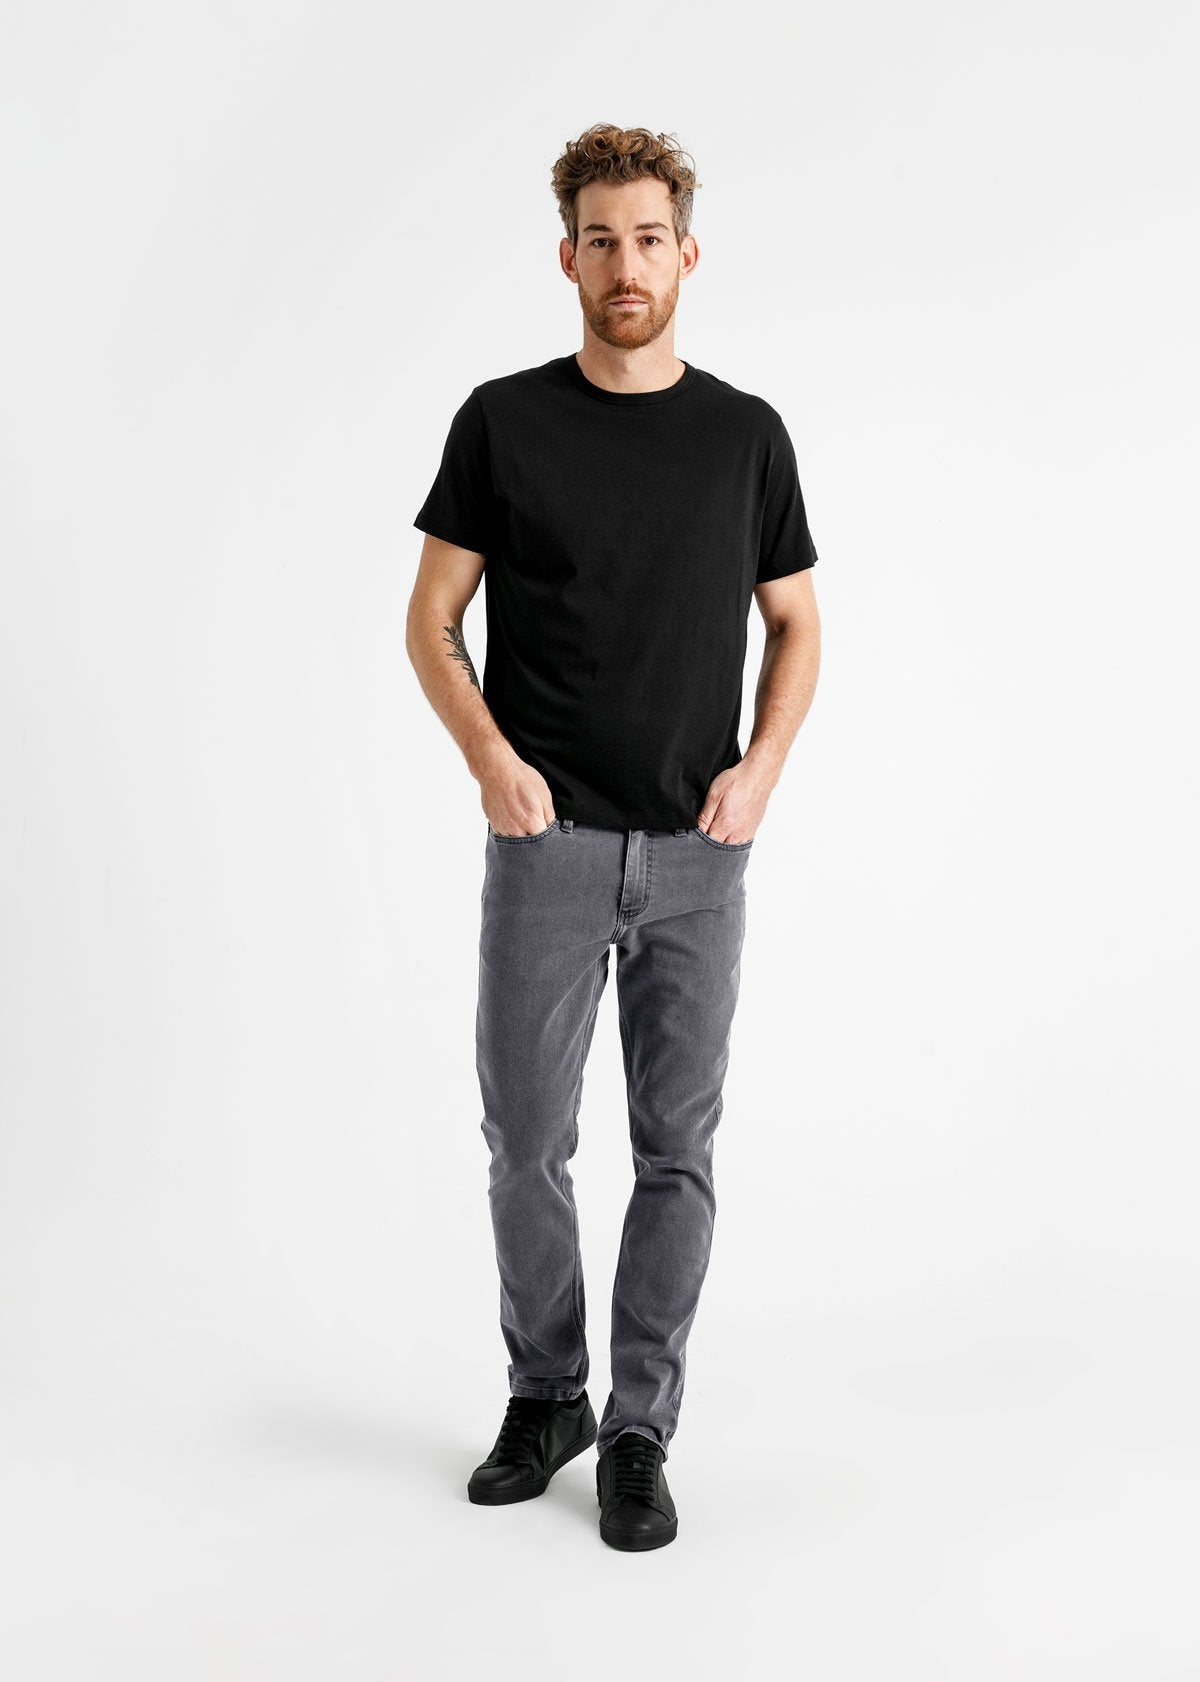 Buy Men Grey Light Super Slim Fit Jeans Online - 766599